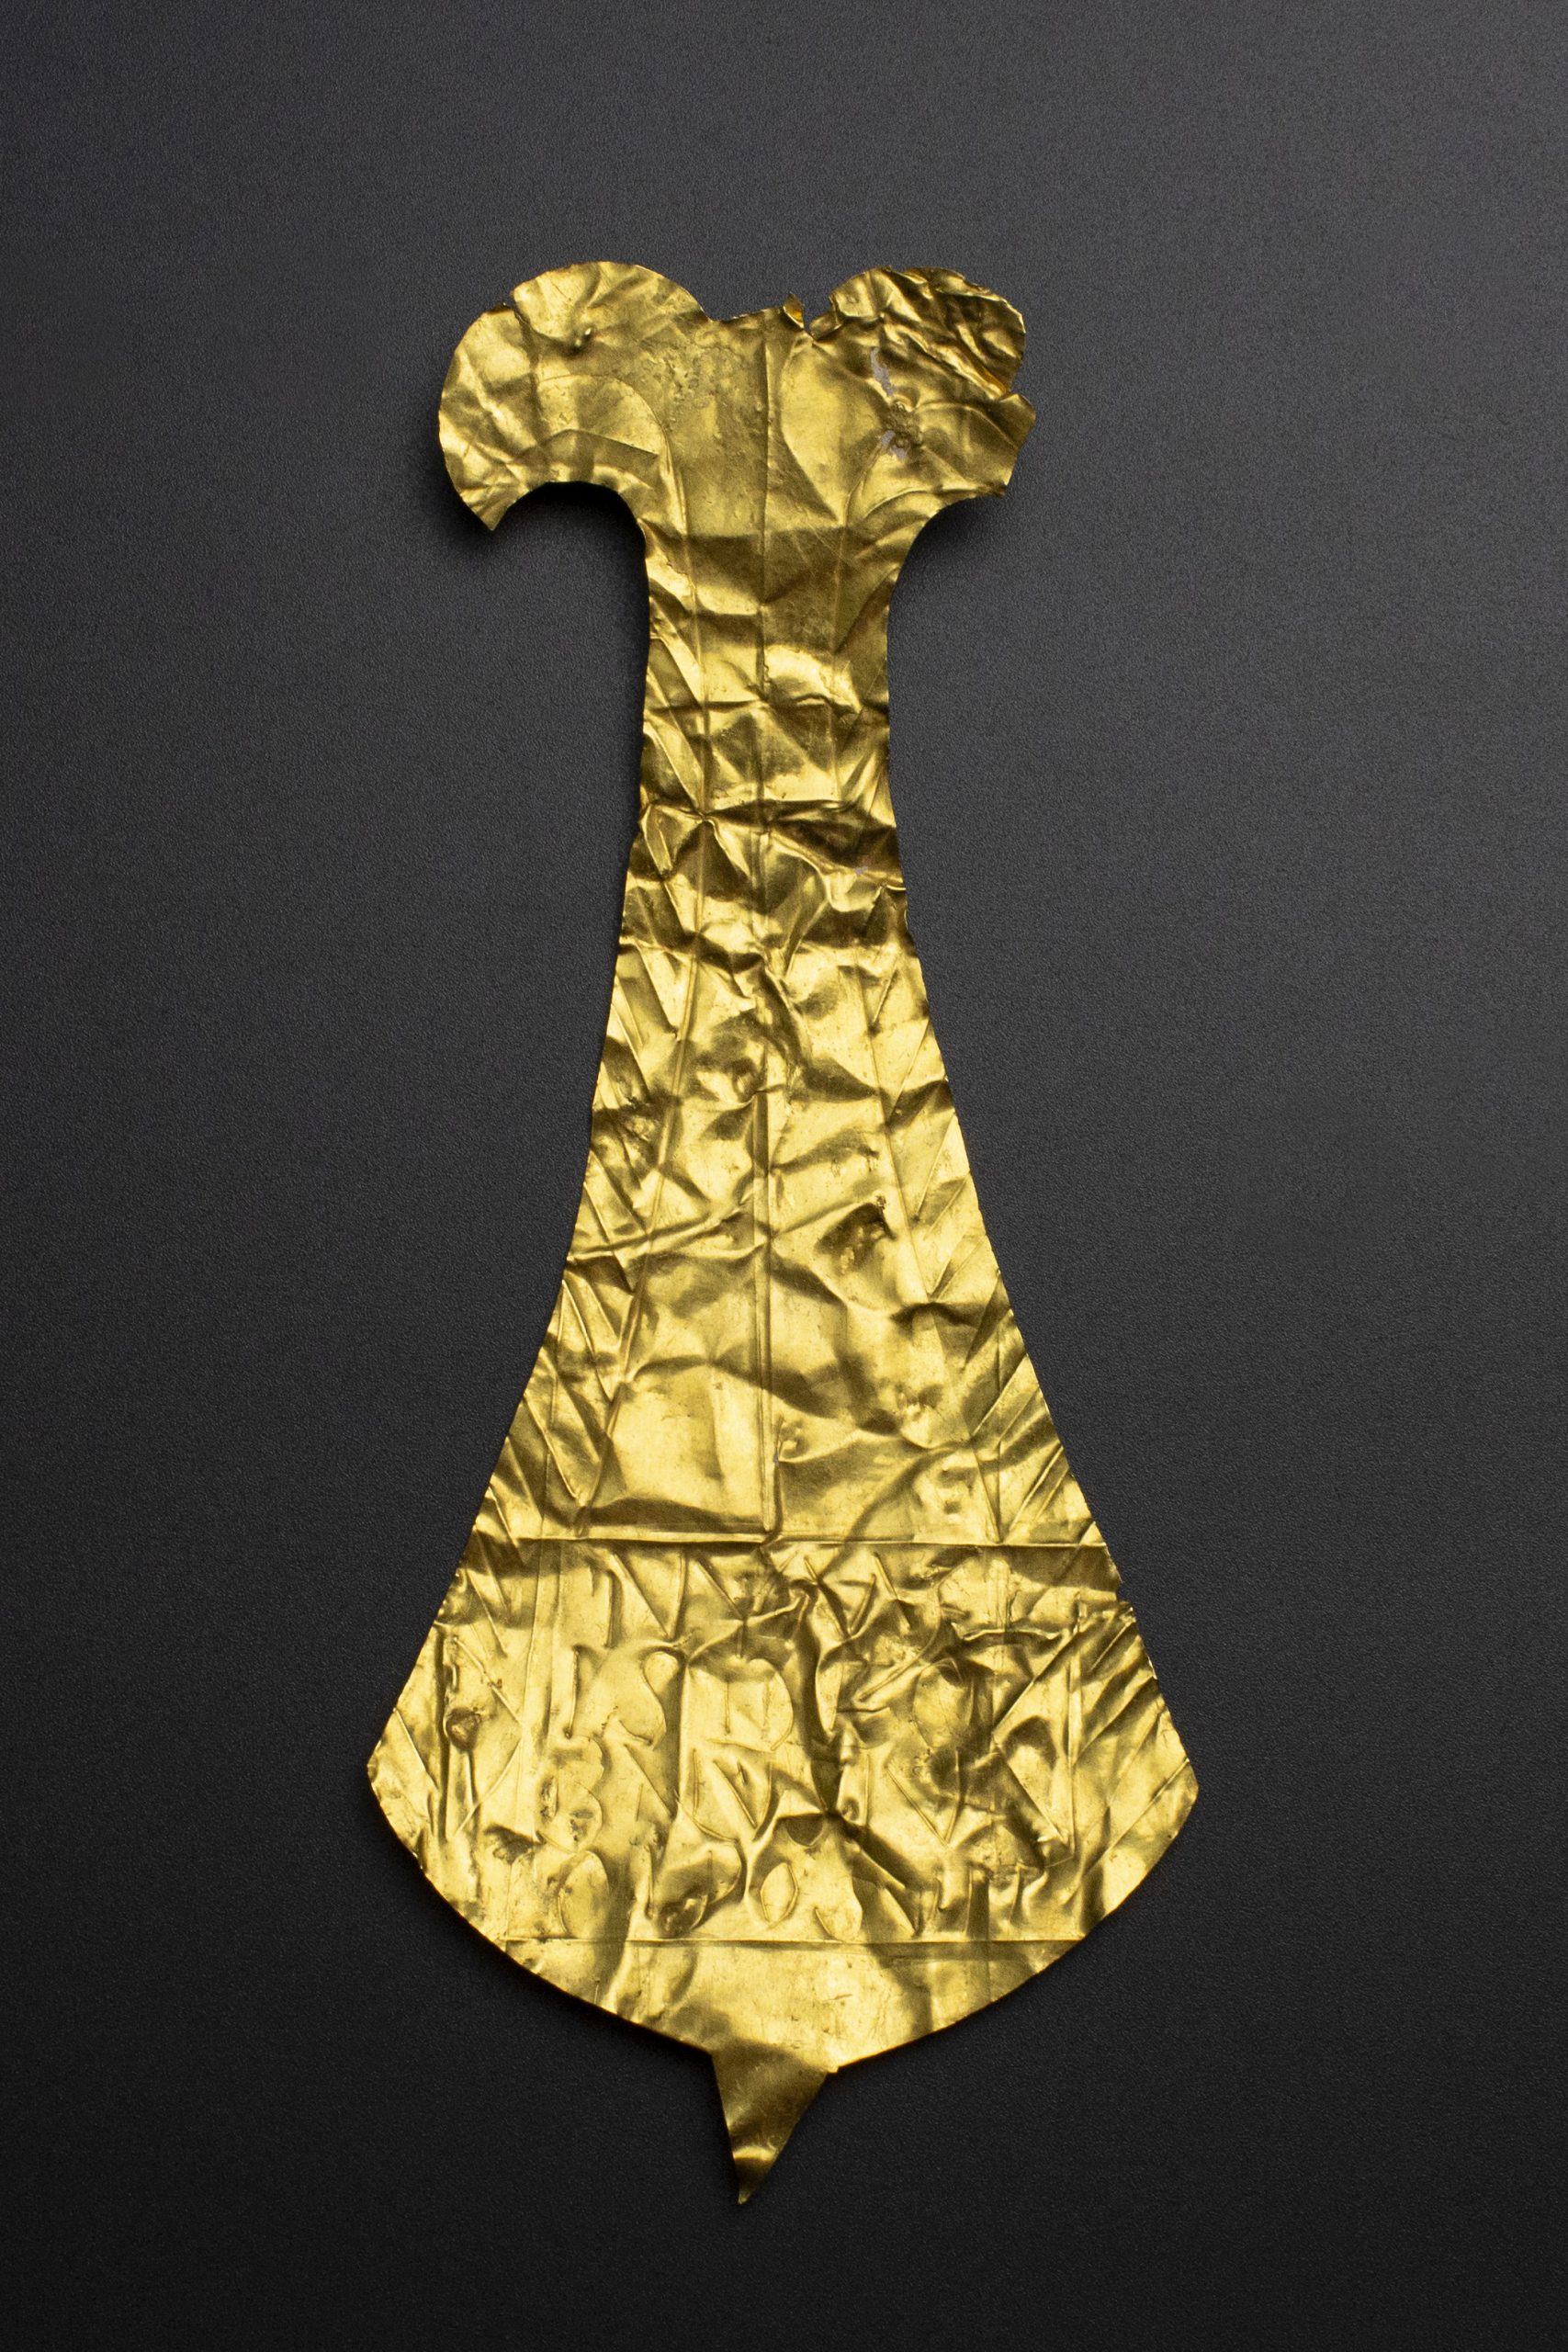 Plăcuță de aur romană de la Germisara, o altă piesă deosebită din patrimoniul MCDR Deva